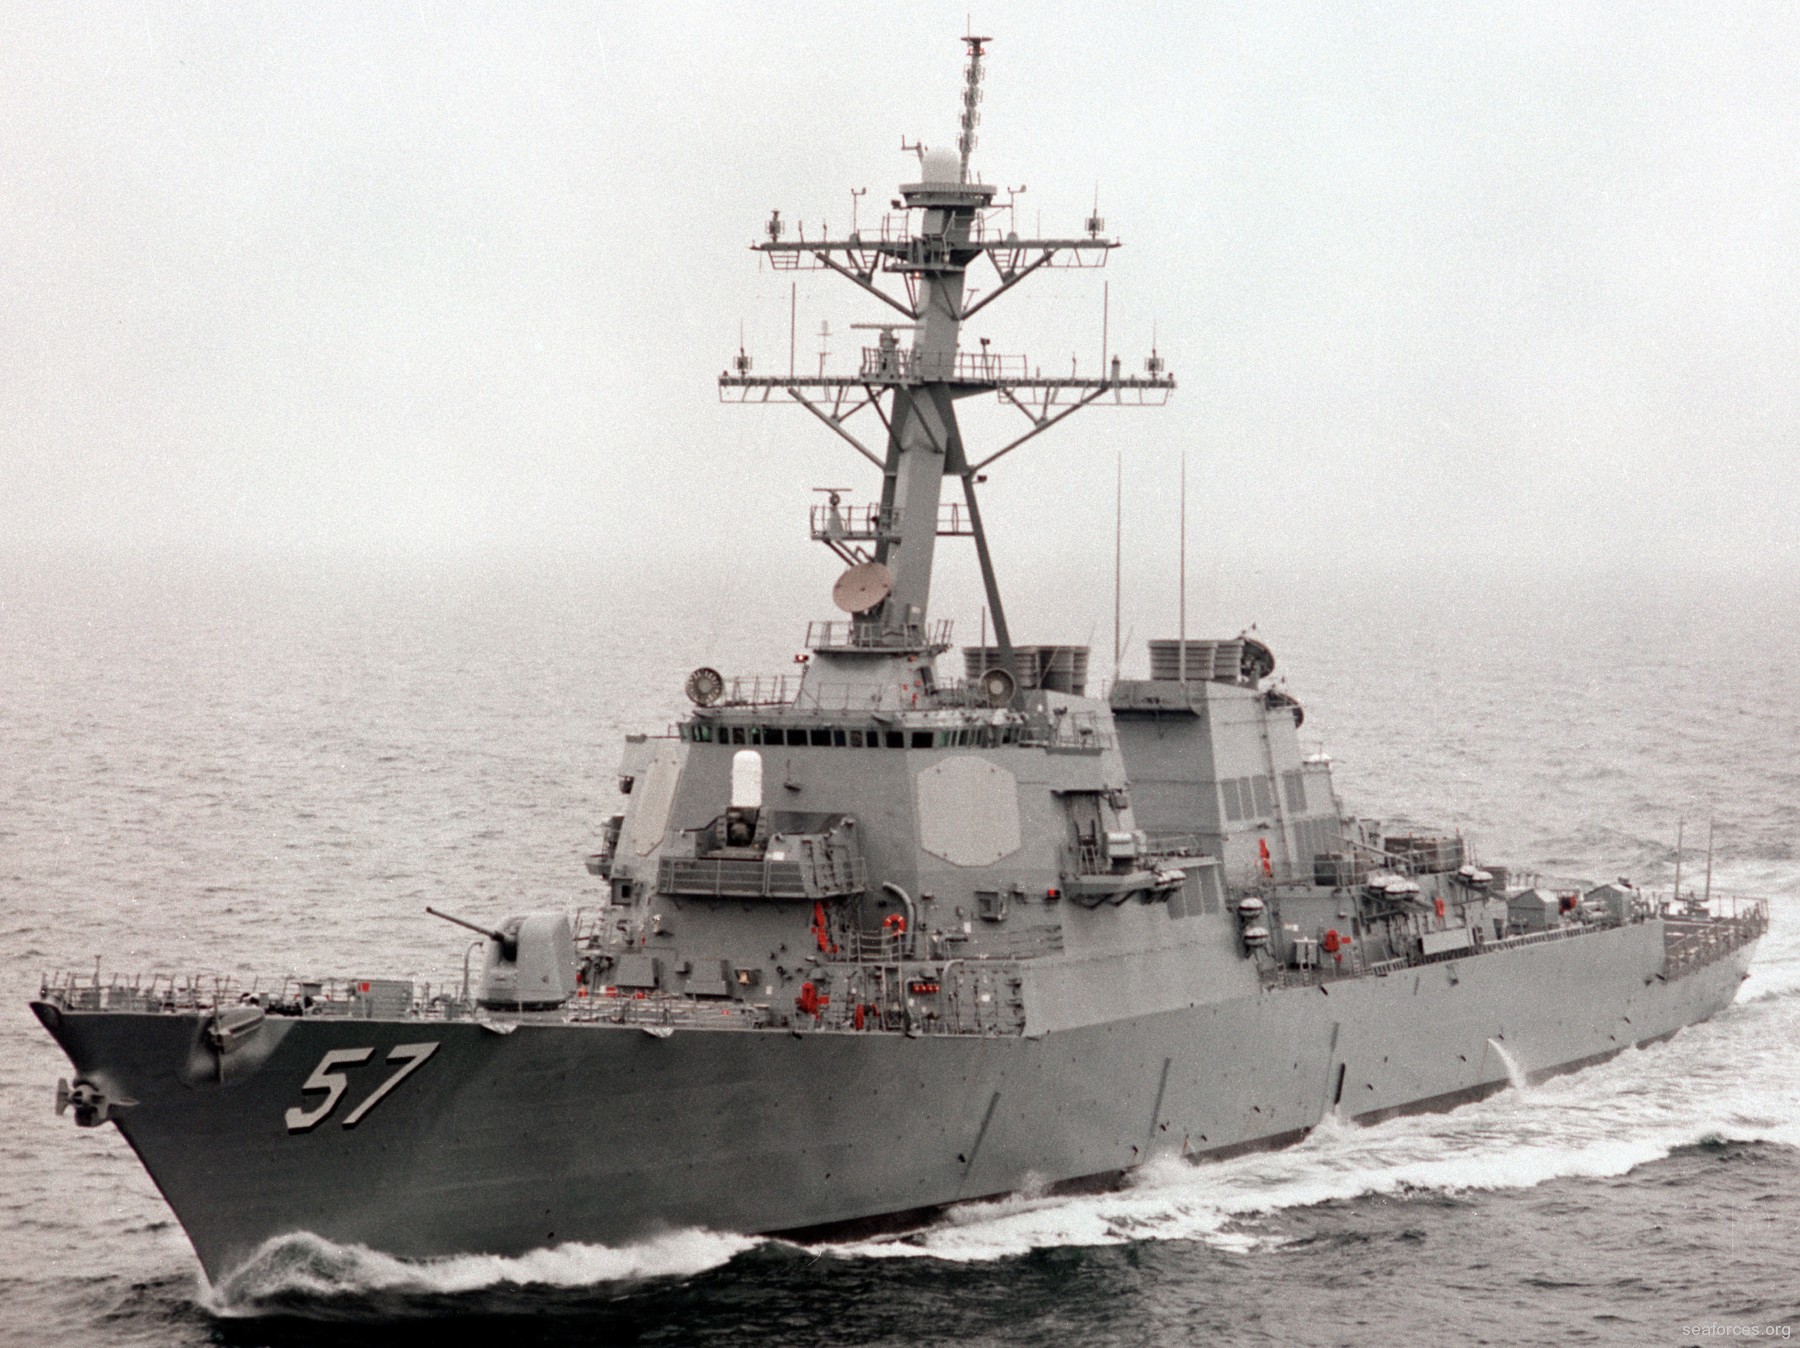 ddg-57 uss mitscher guided missile destroyer us navy 82 trials